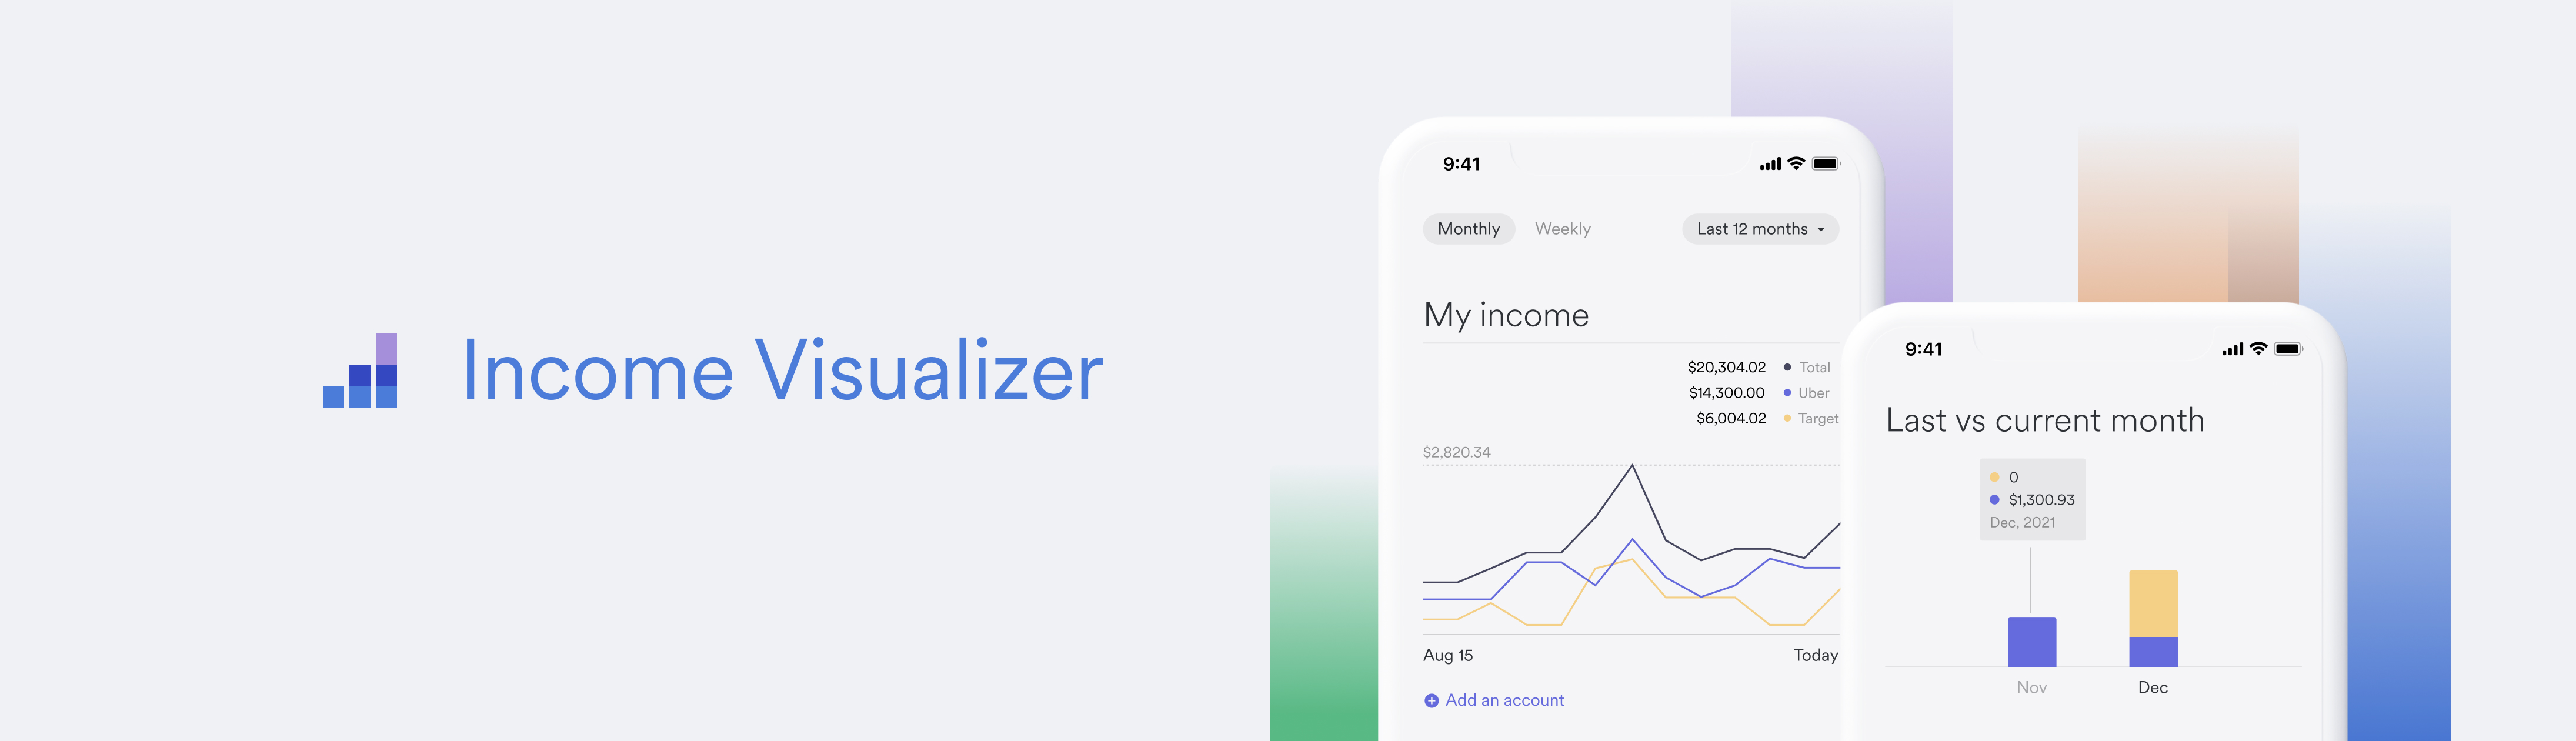 Income Visualizer